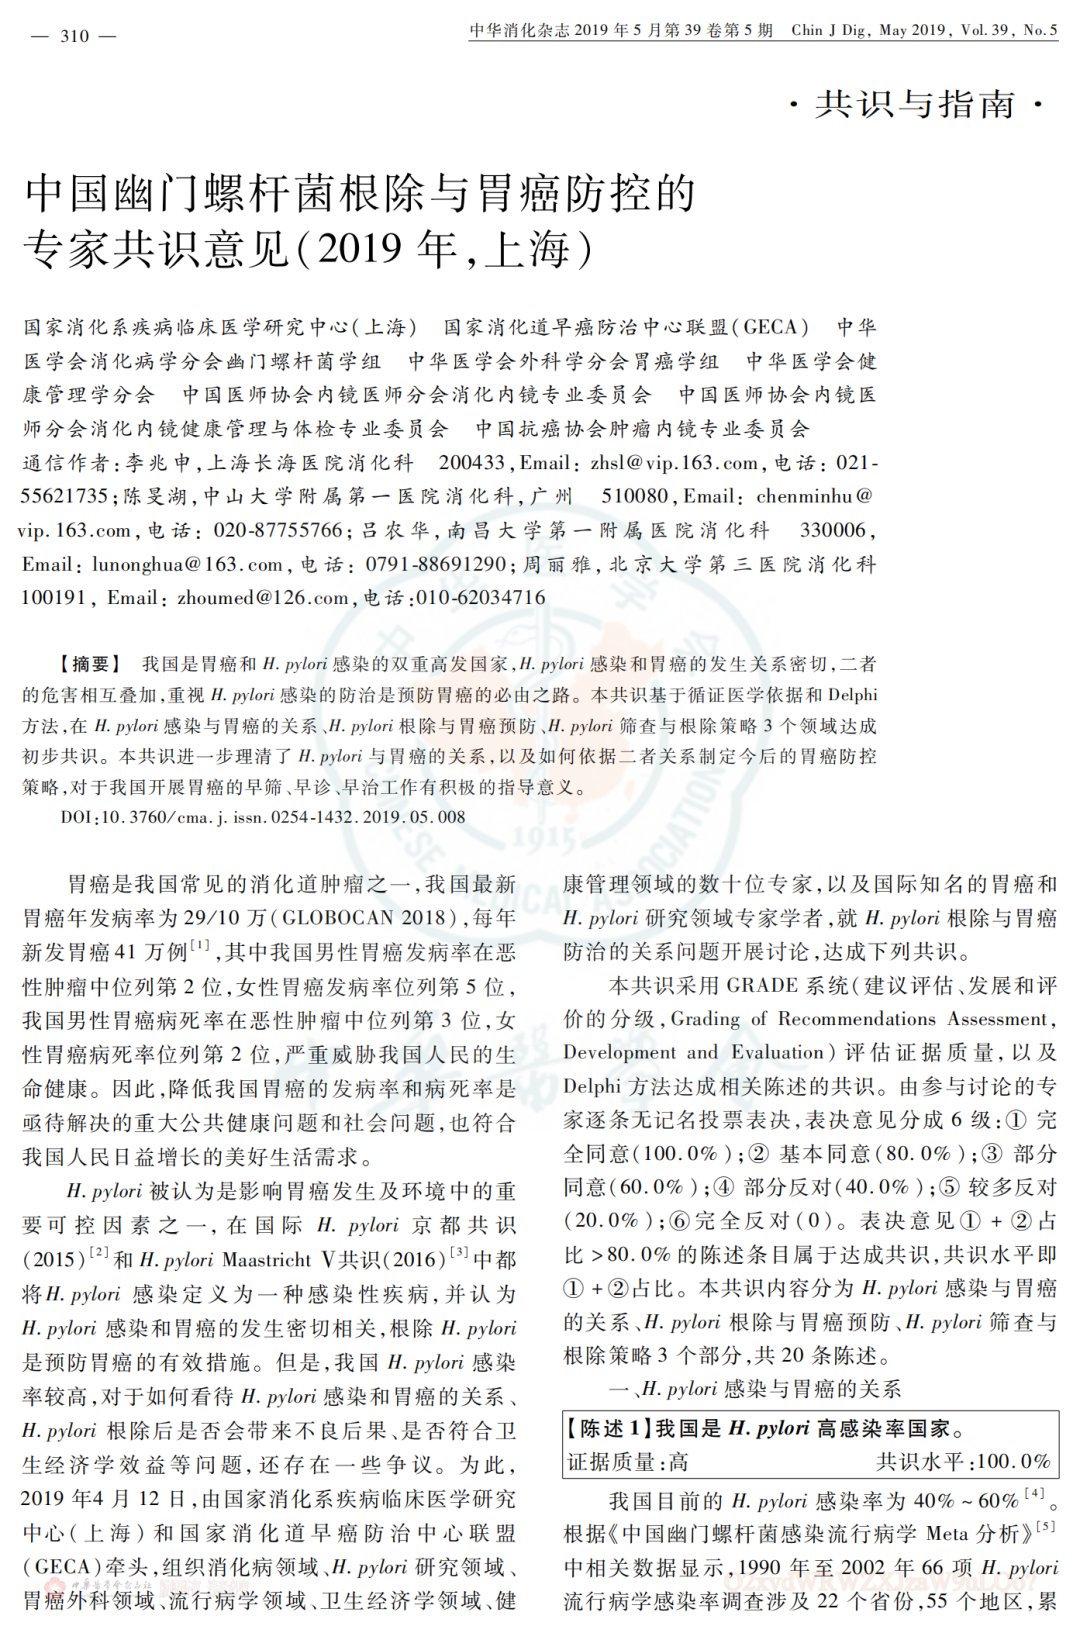 幽门螺杆菌|中国幽门螺杆菌根除与胃癌防控的专家共识意见